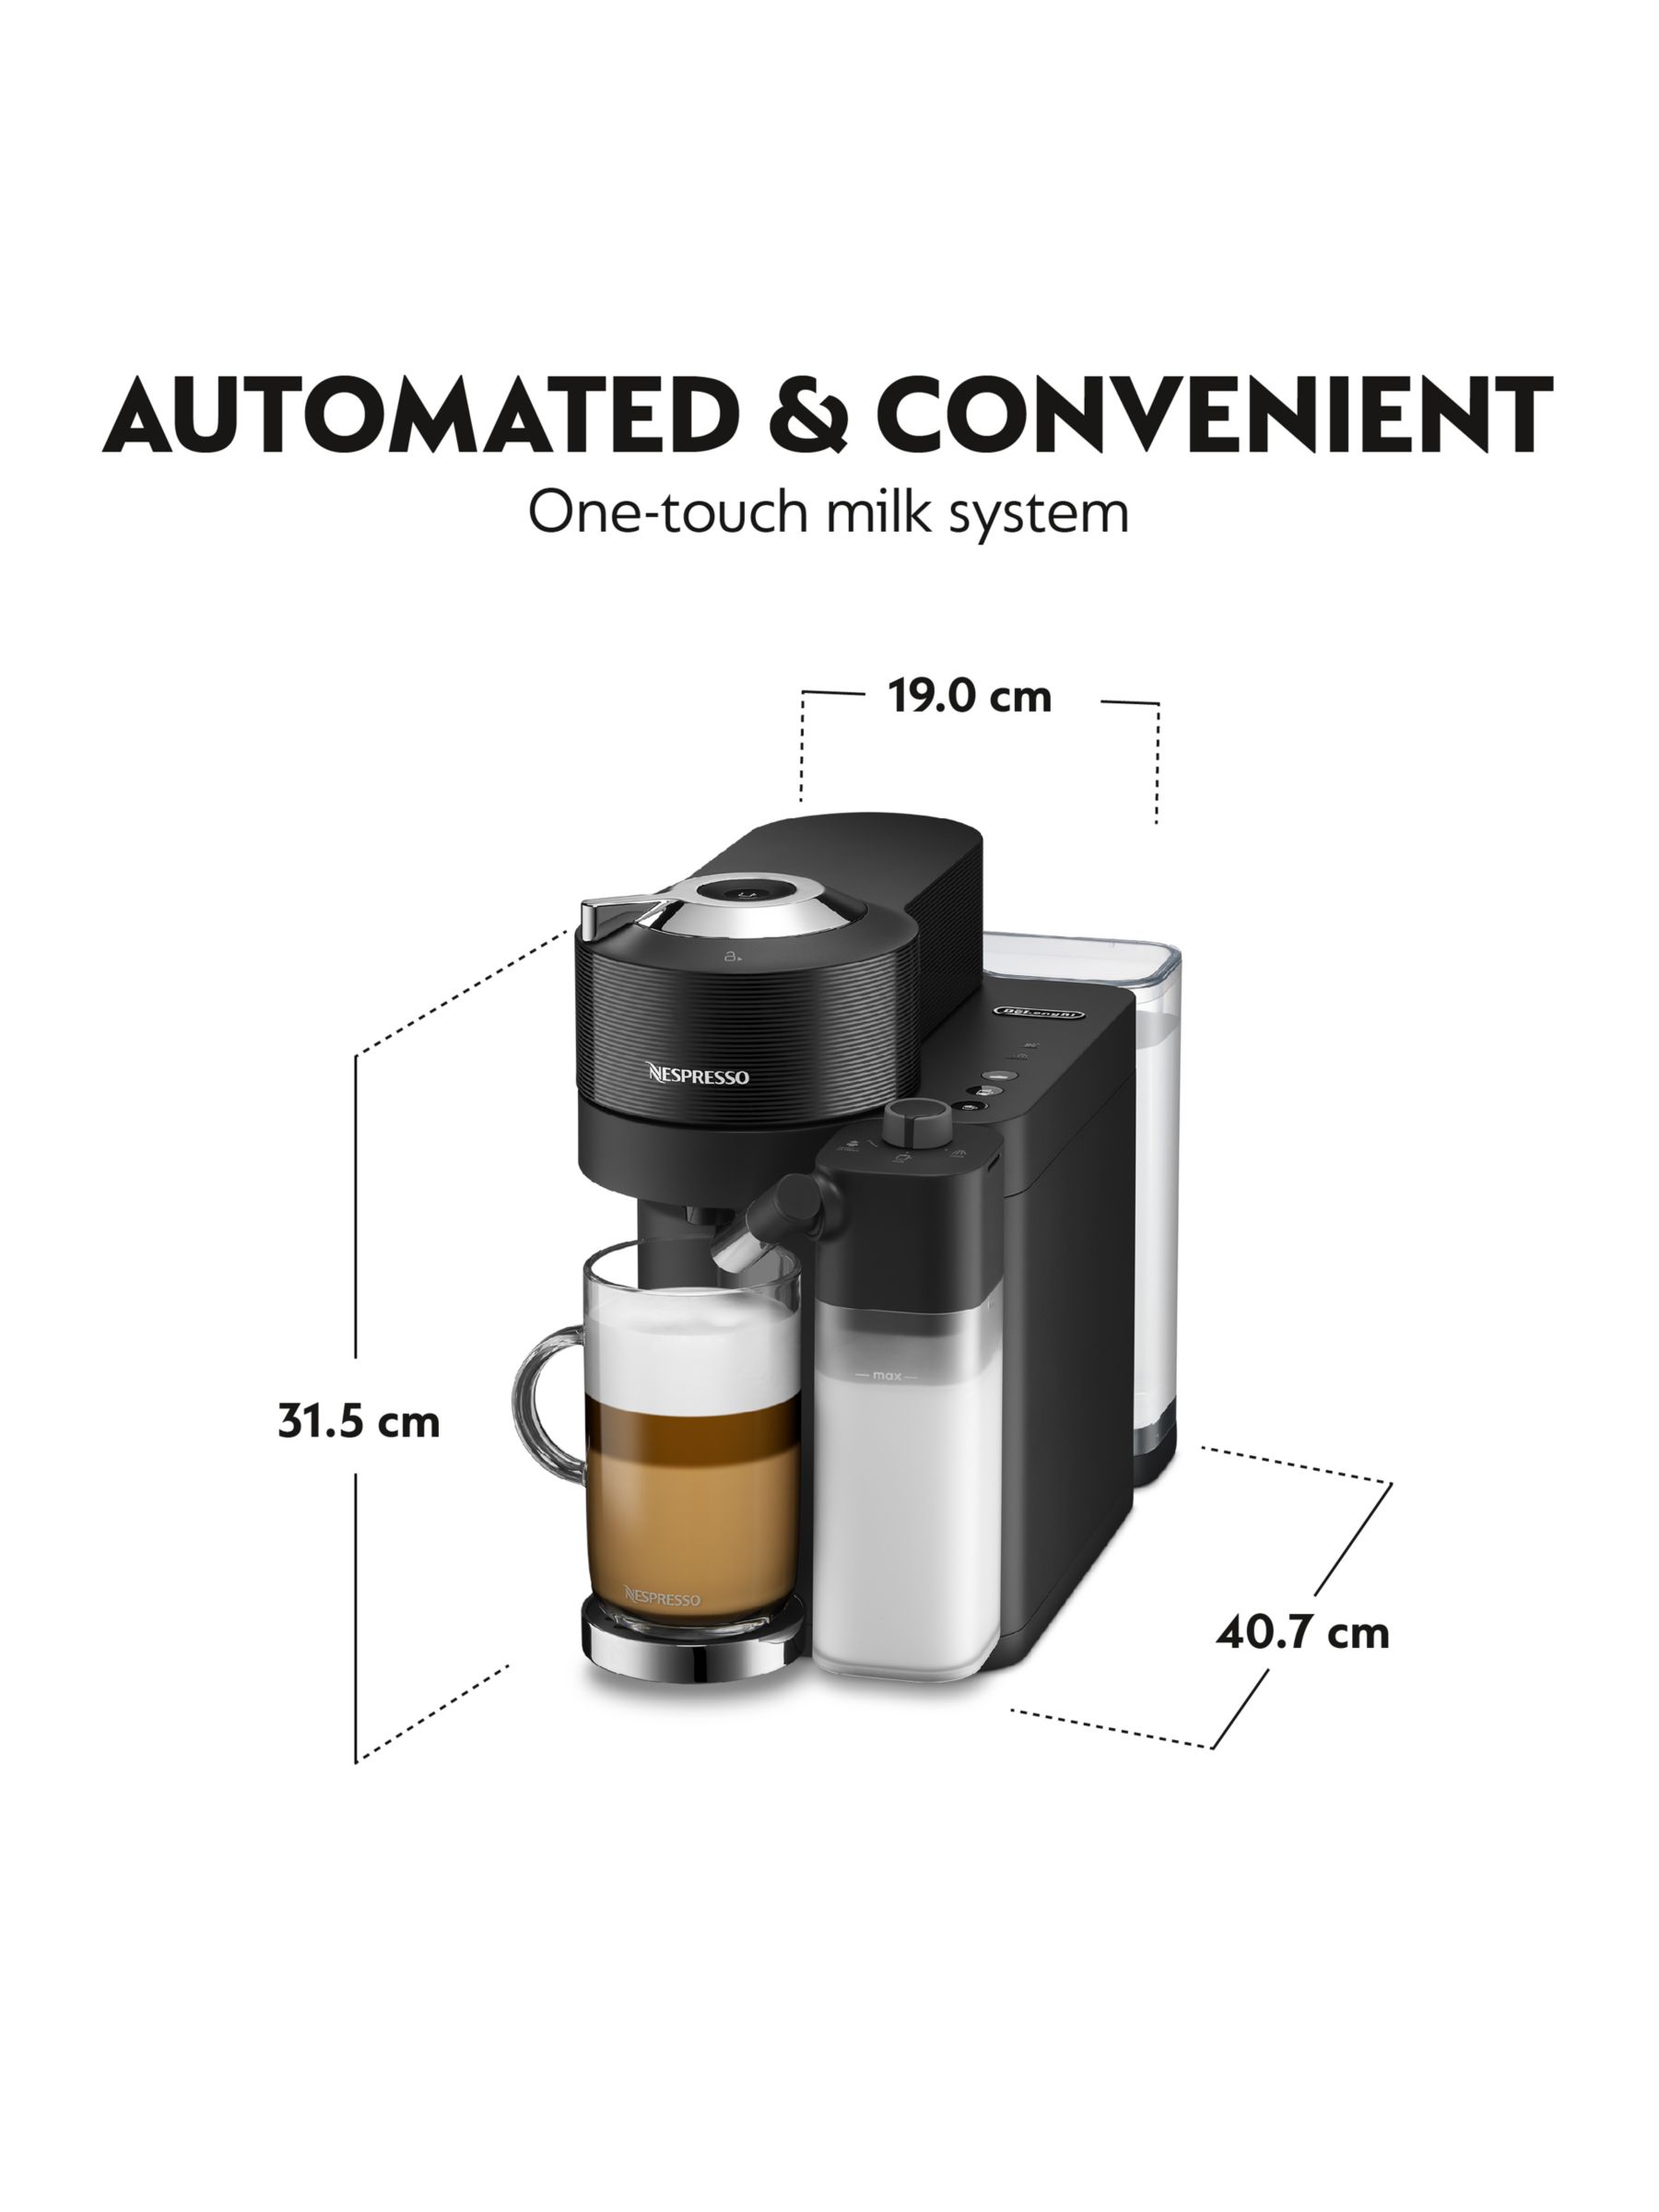 Vertuo Lattissima Nespresso coffee machine ENV300.B